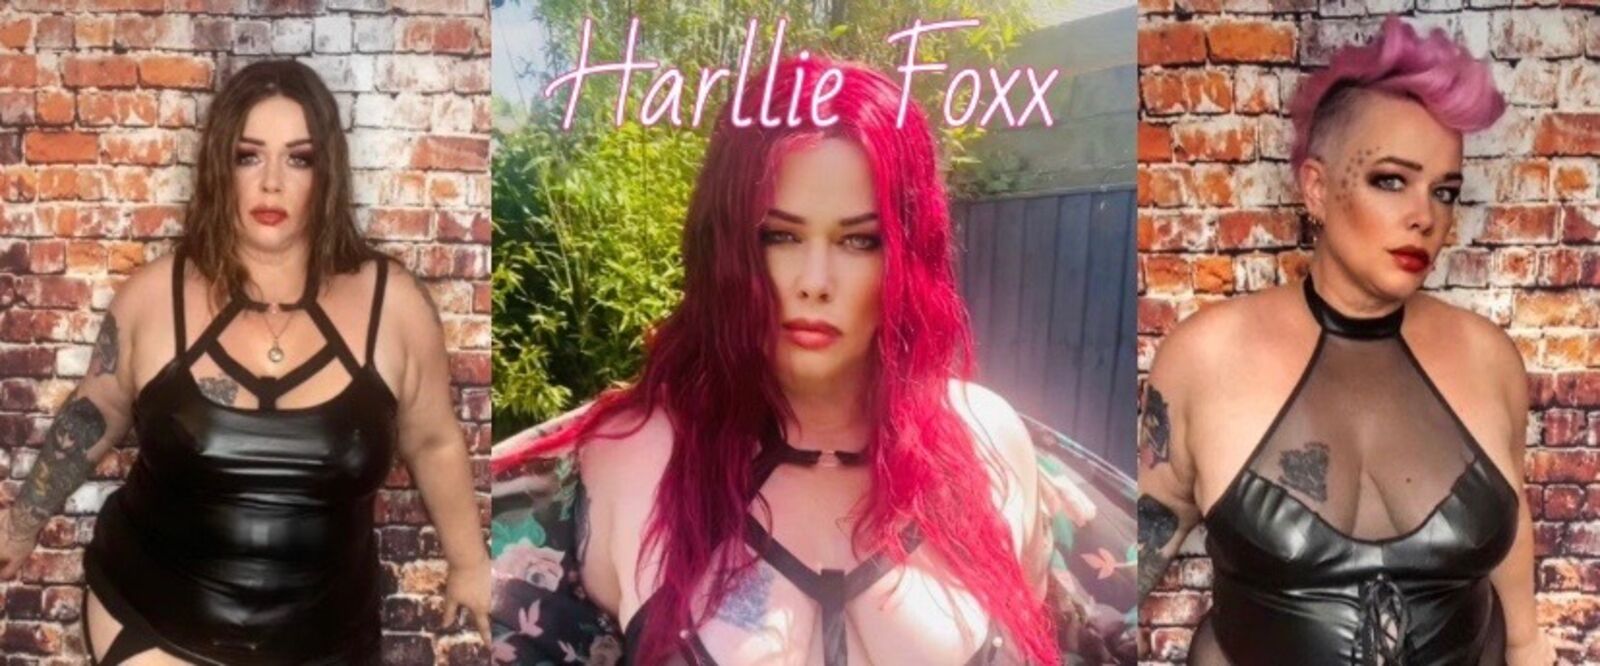 See Harllie Foxx profile